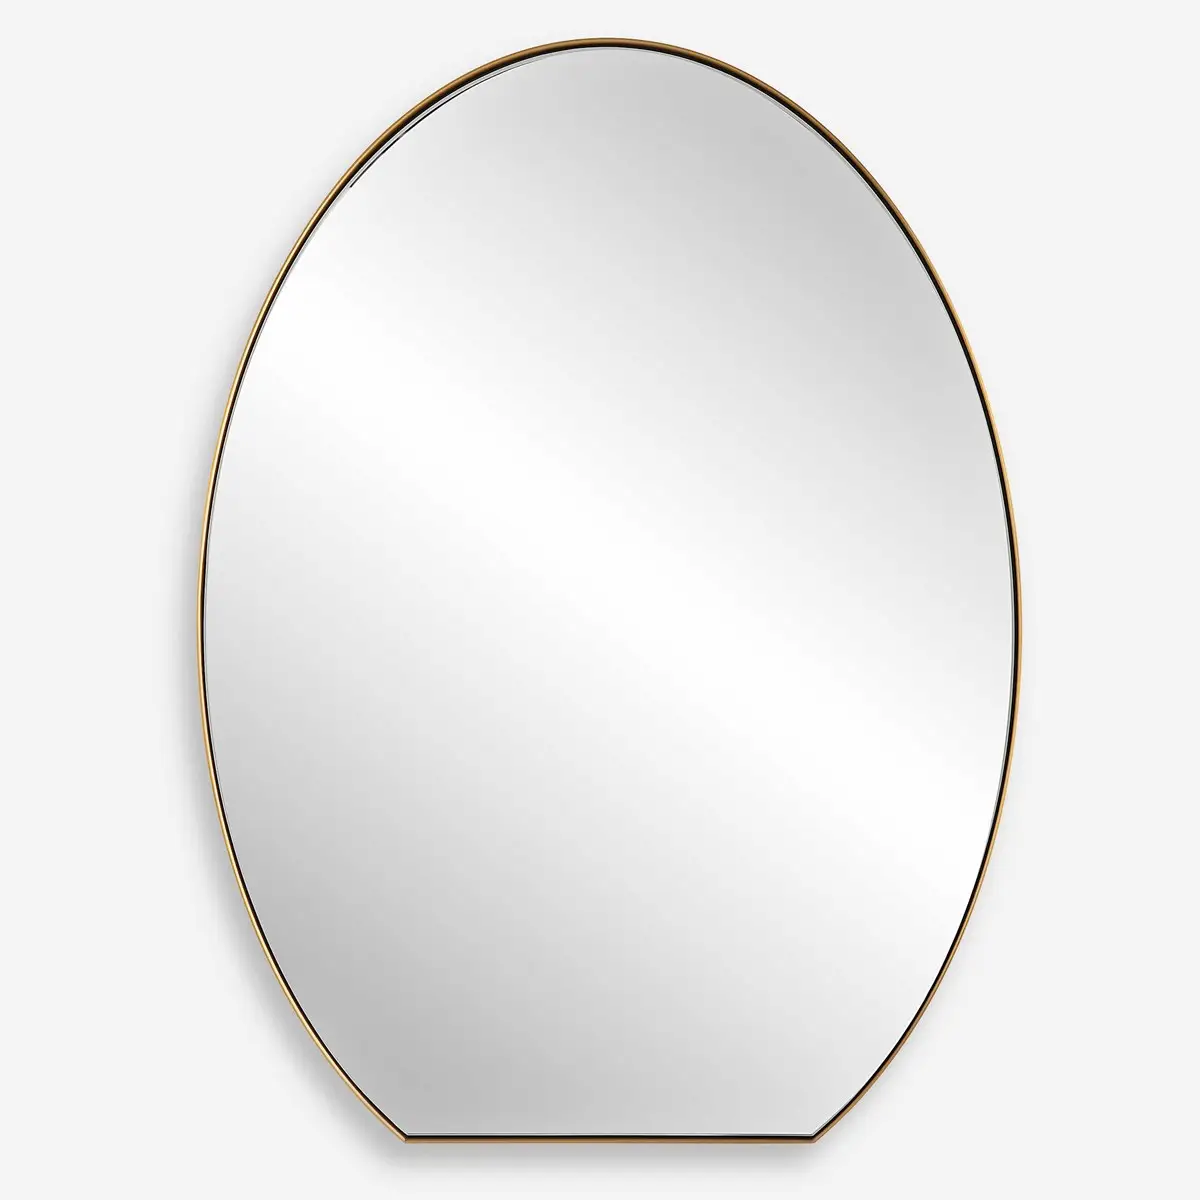 Miroir mural ovale en acier inoxydable pour la maison et l'hôtel miroir décoratif de maquillage pour salon, chambre, couloir